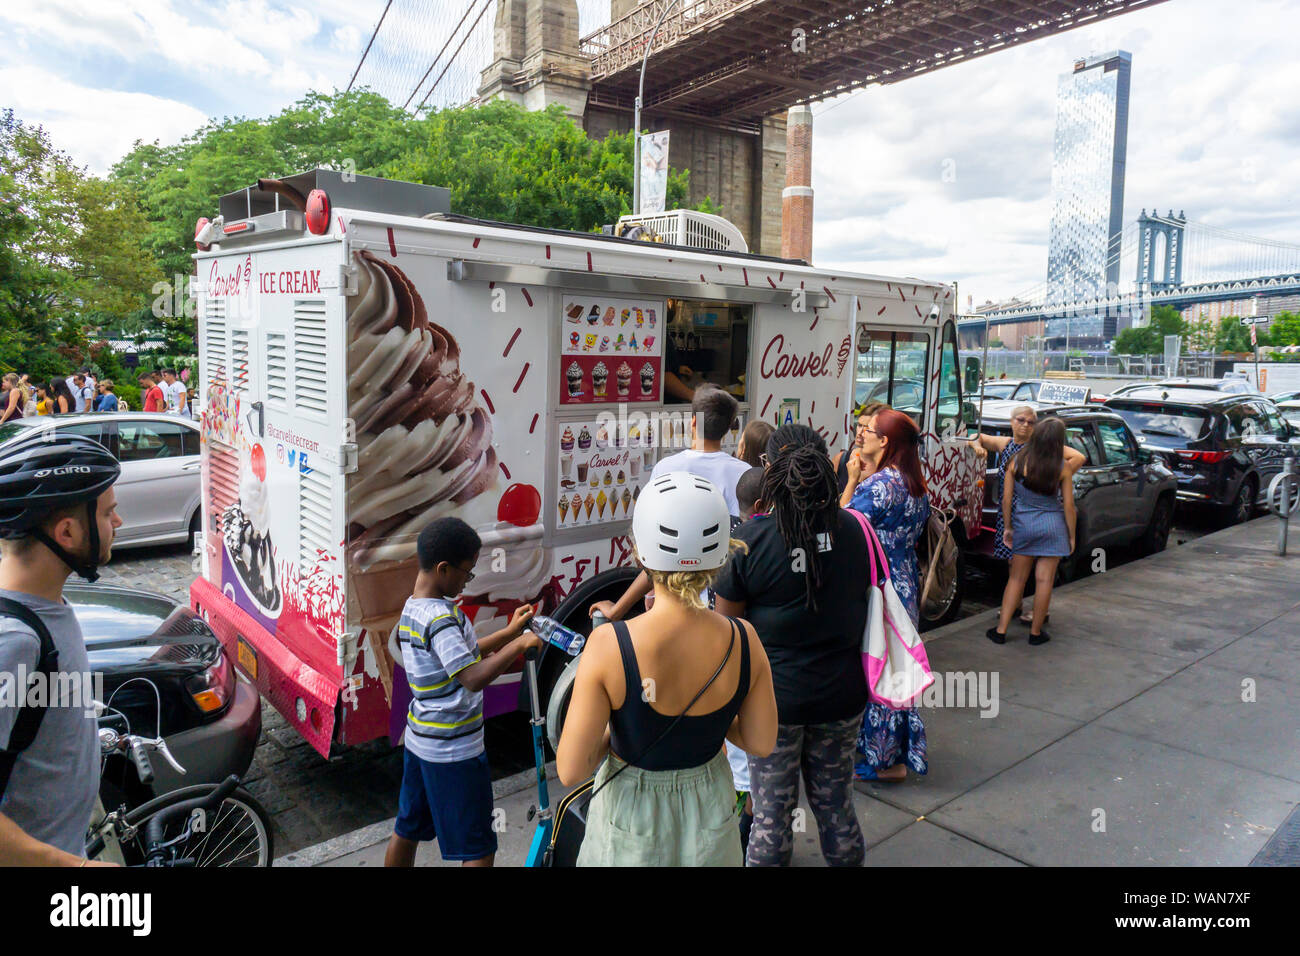 Une marque de crème glacée molle, Carvel camion dans le quartier de Brooklyn Dumbo dimanche à New York, le 11 août 2019. (© Richard B. Levine) Banque D'Images